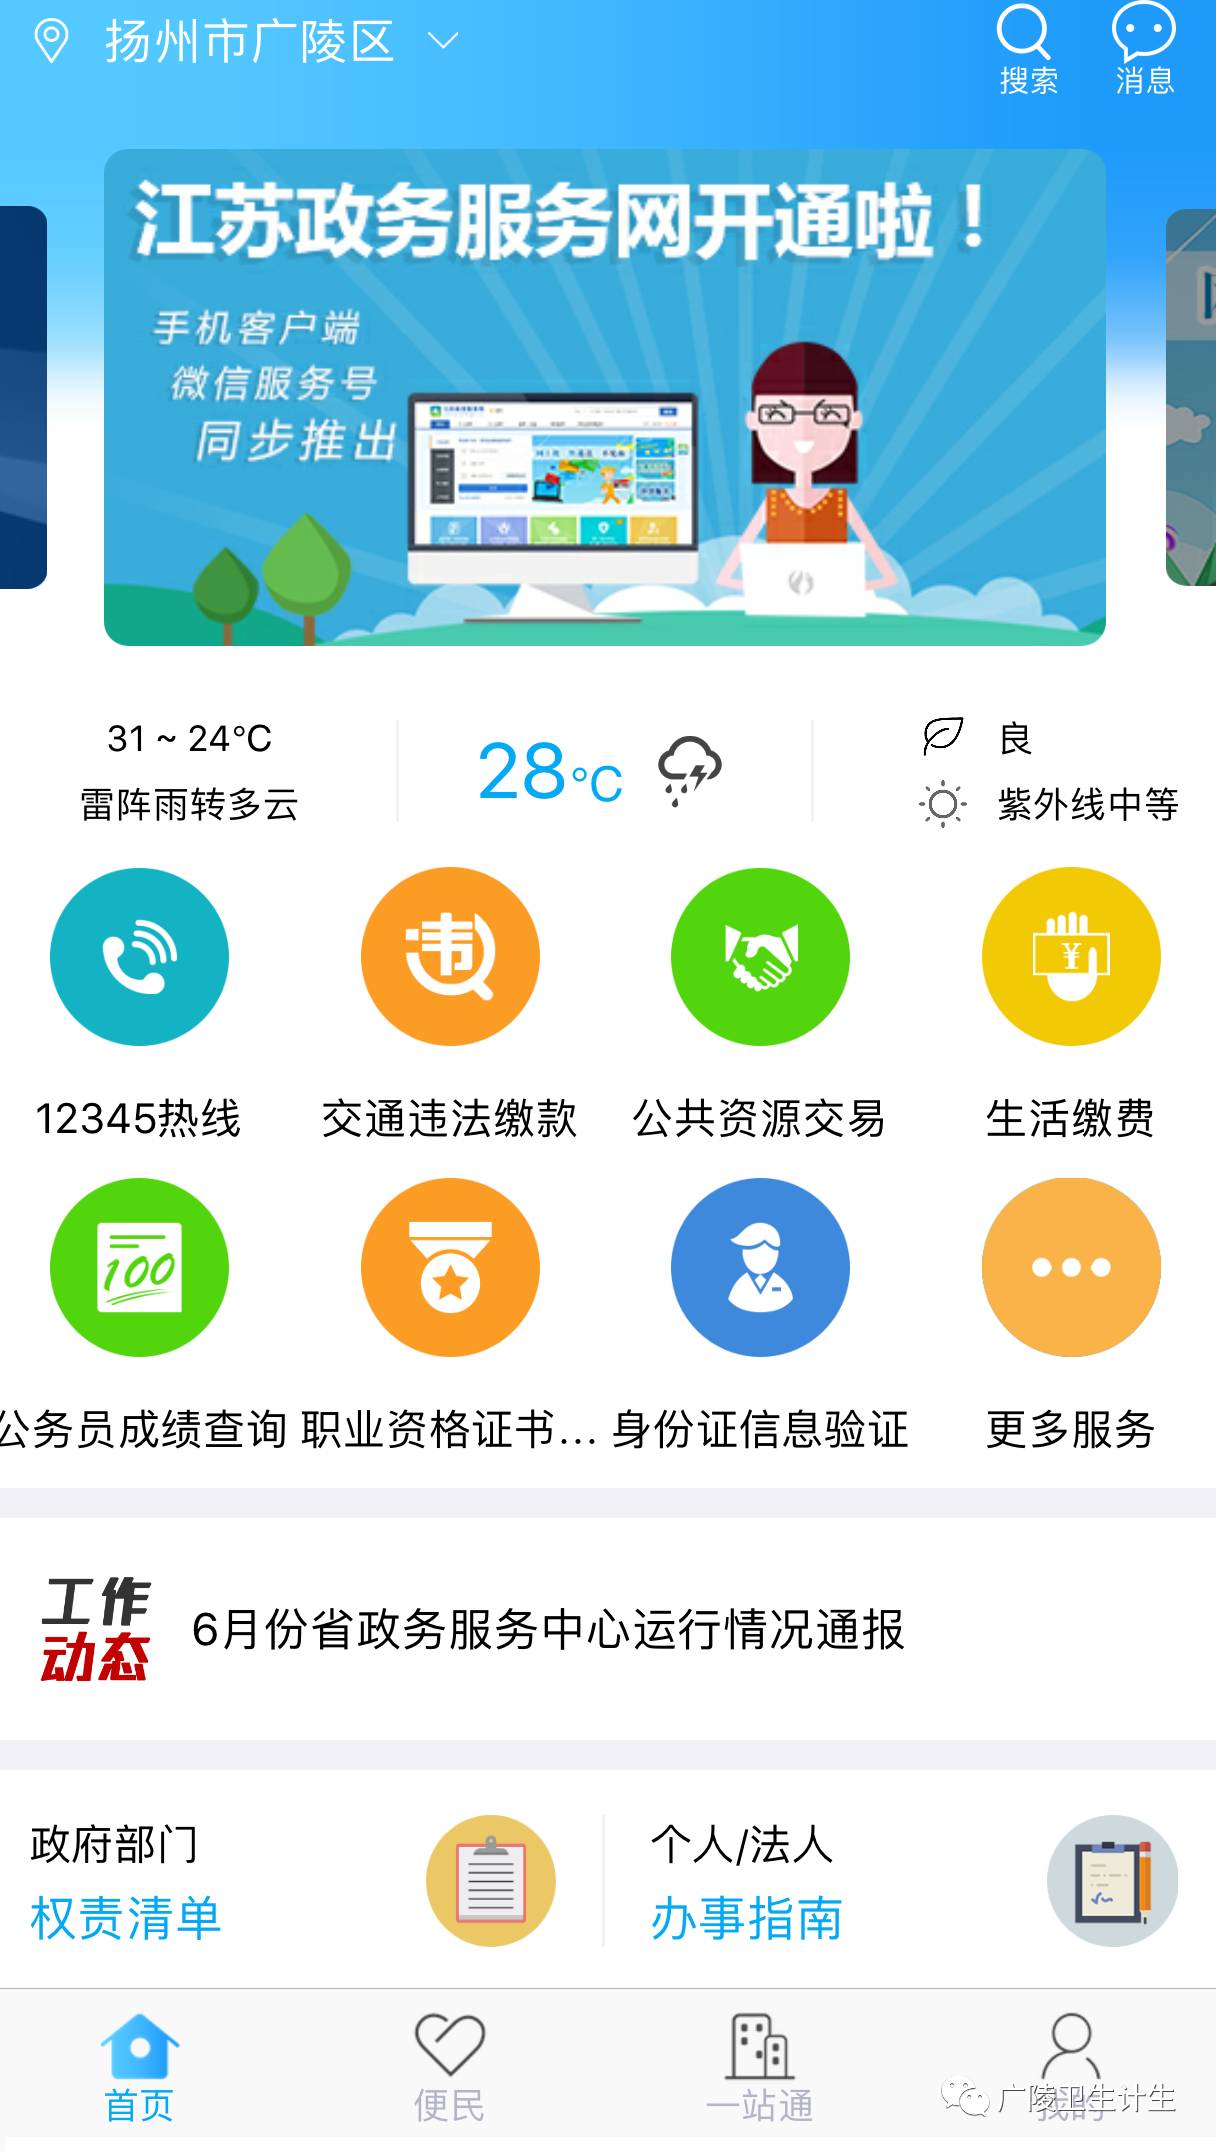 【网上办事】下载江苏政务服务app,让您办事无忧!